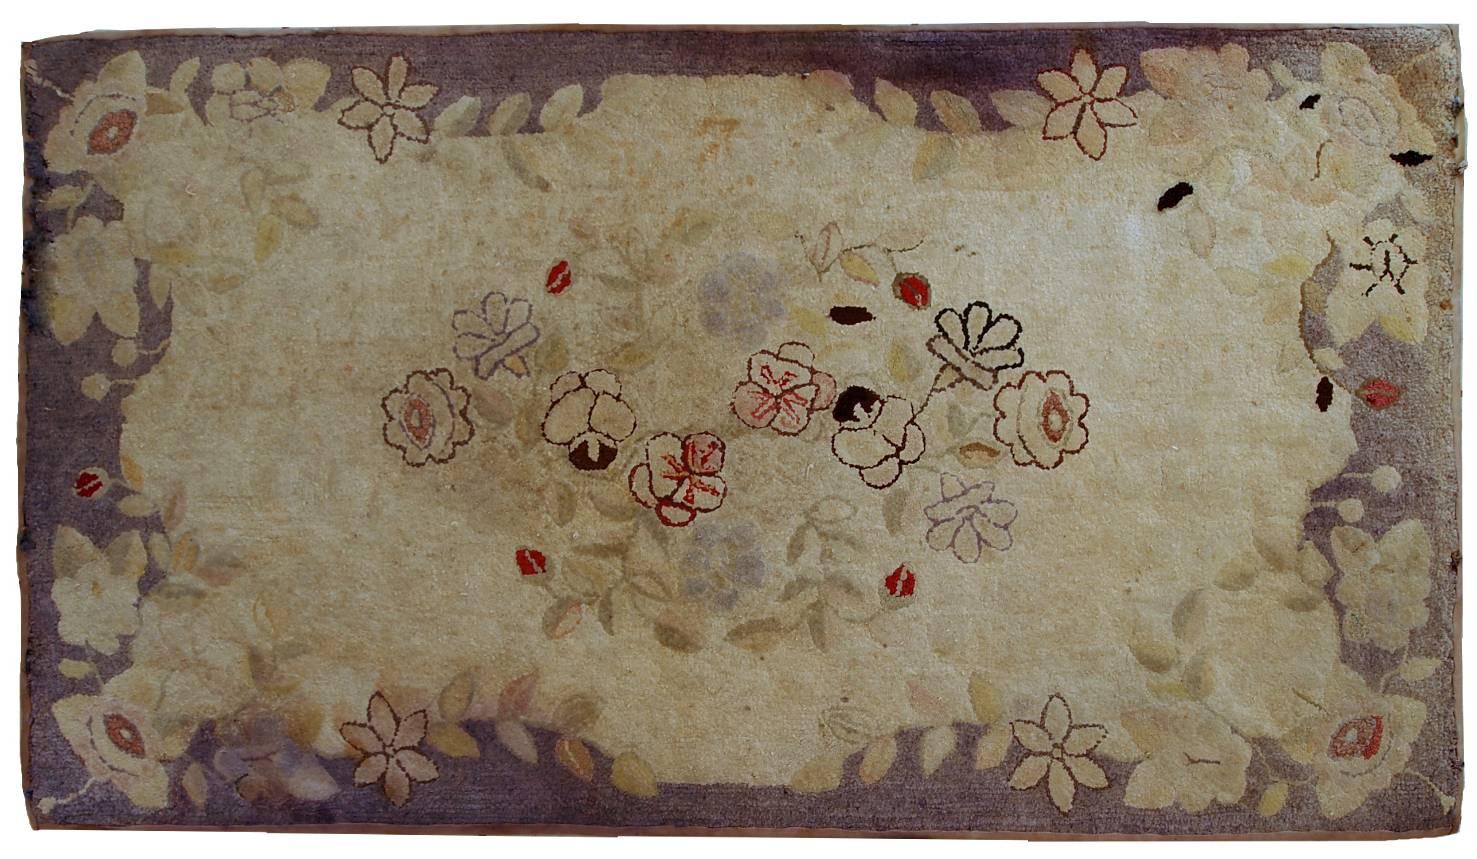 Handgefertigter antiker amerikanischer Primitiv-Hakenteppich in Beige mit abstraktem/floralem Muster. Der Rand ist lila. Es ist in gutem Zustand, hat minimale Restaurationen an den Enden.
 